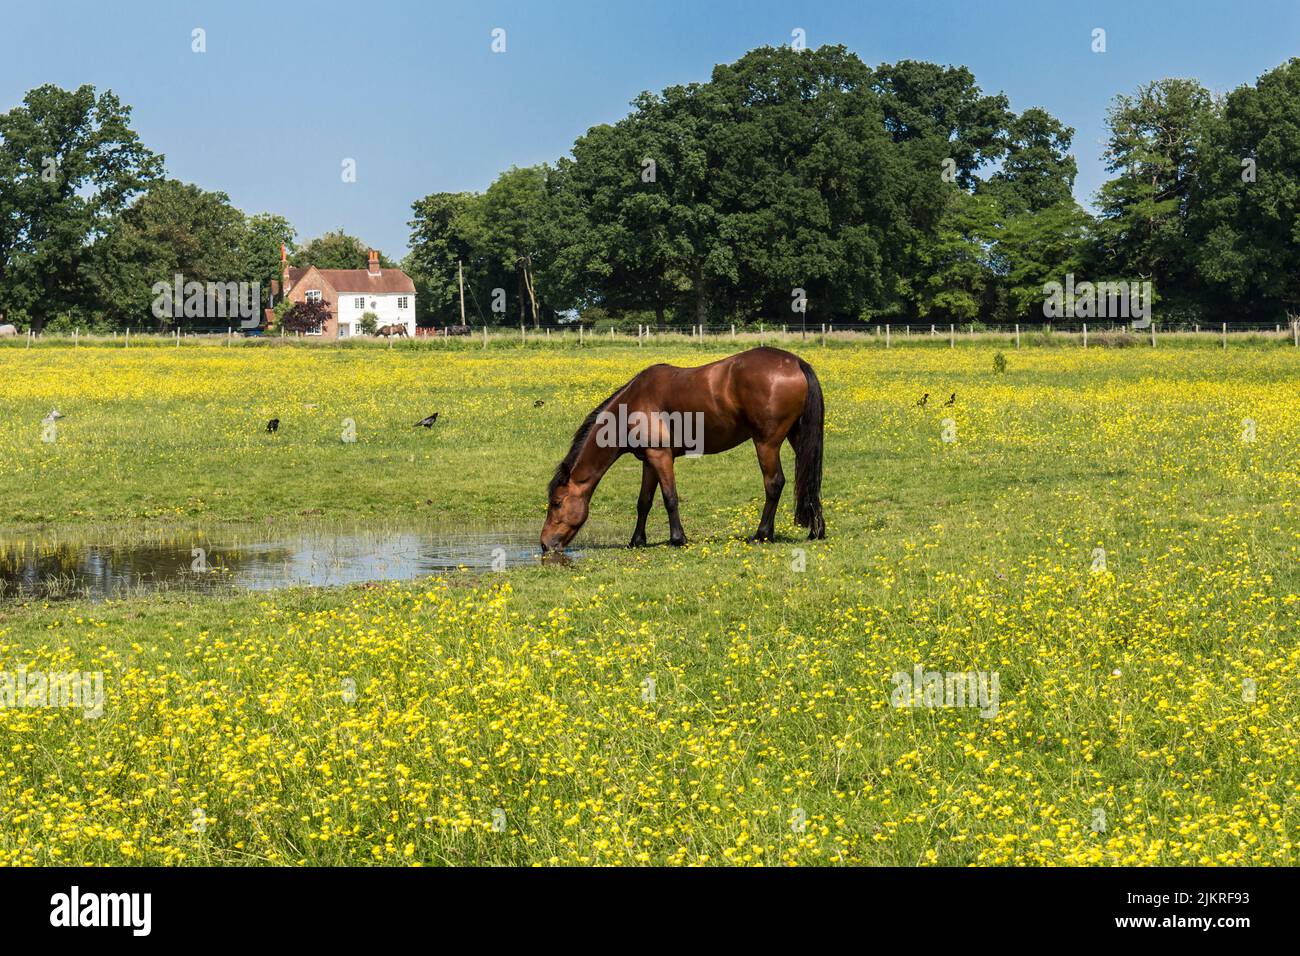 Cheval debout paître dans un champ dans le village de Spicers Wood, Wokingham, Berkshire. ROYAUME-UNI Banque D'Images